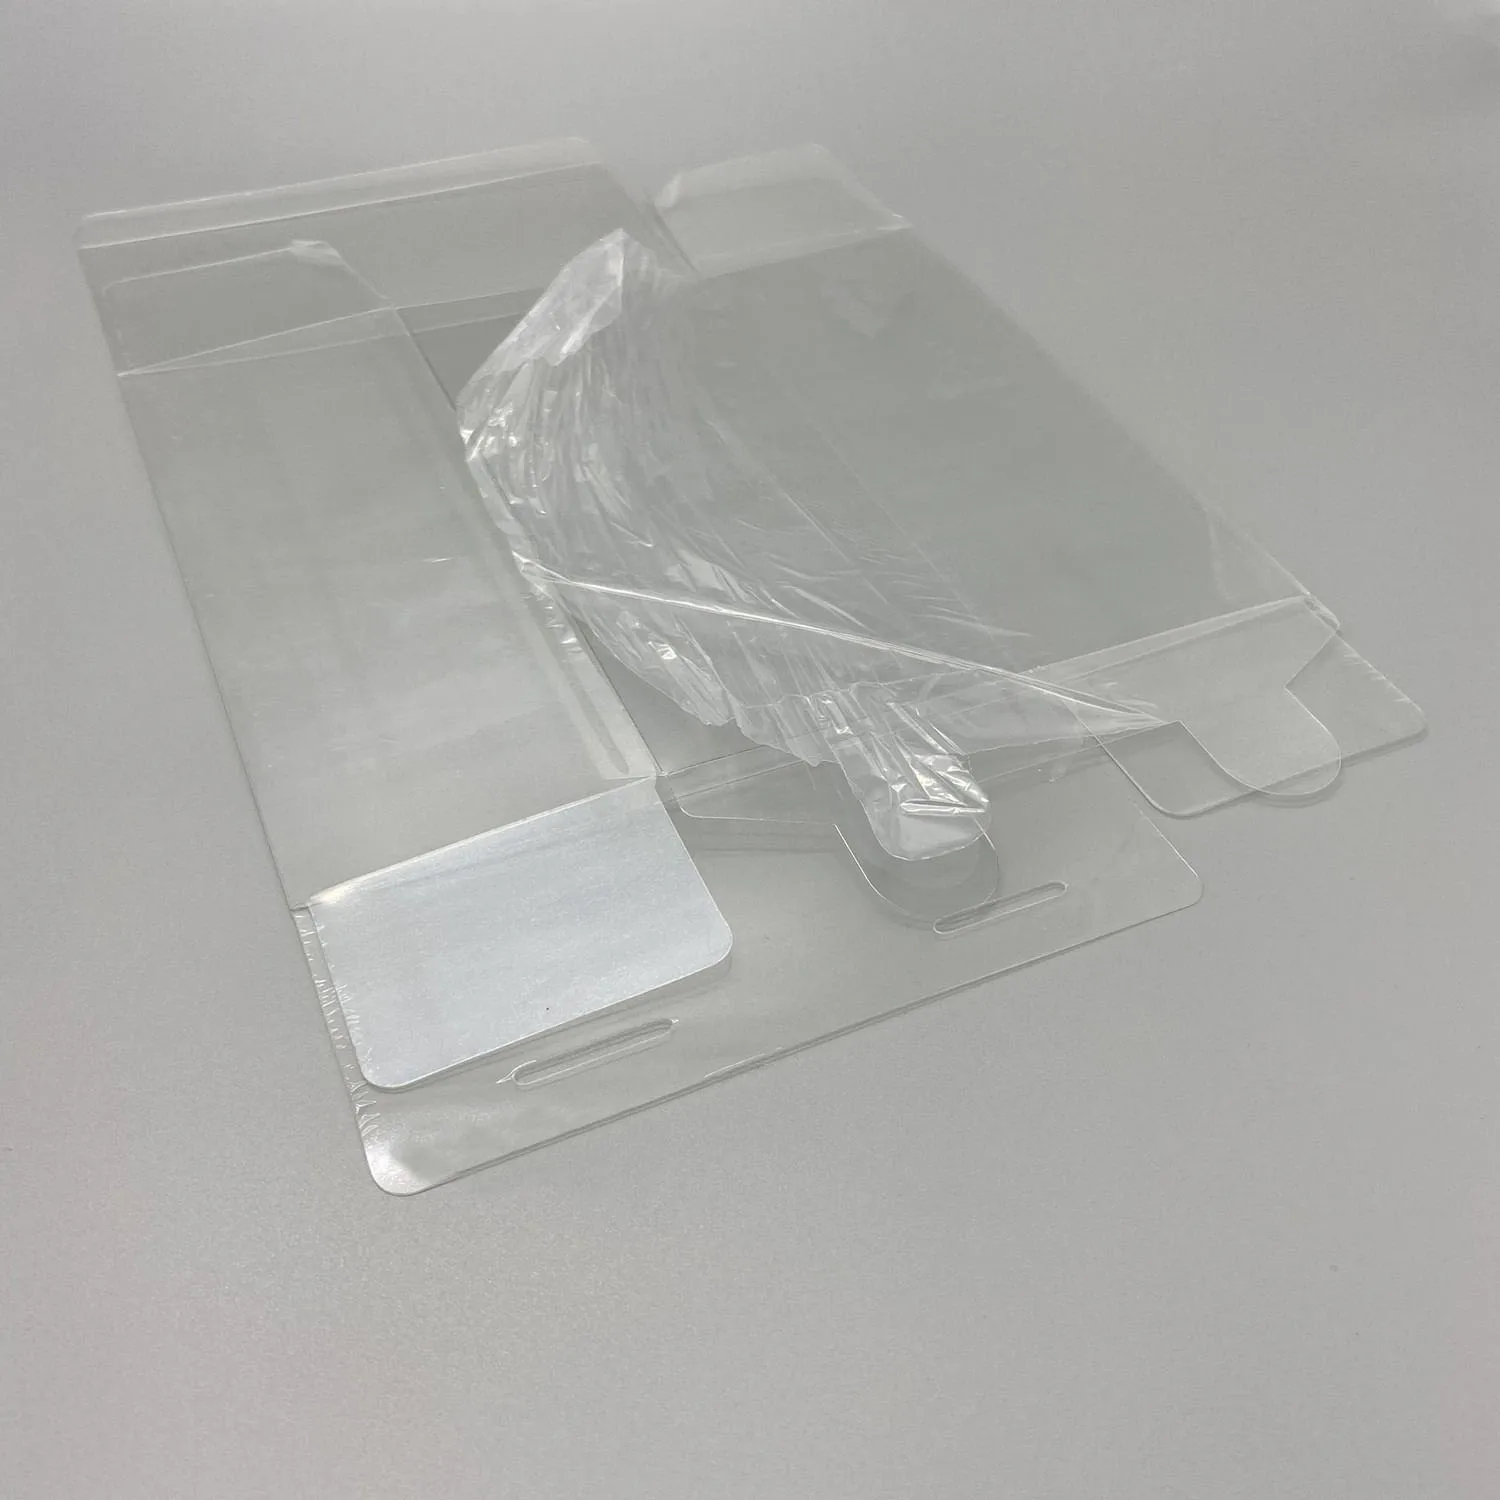 Прозрачный защитный чехол из ПЭТ-пластика для игровой консоли PSPGO Версии EU и HK прозрачный ящик для хранения коллекции дисплеев - 2